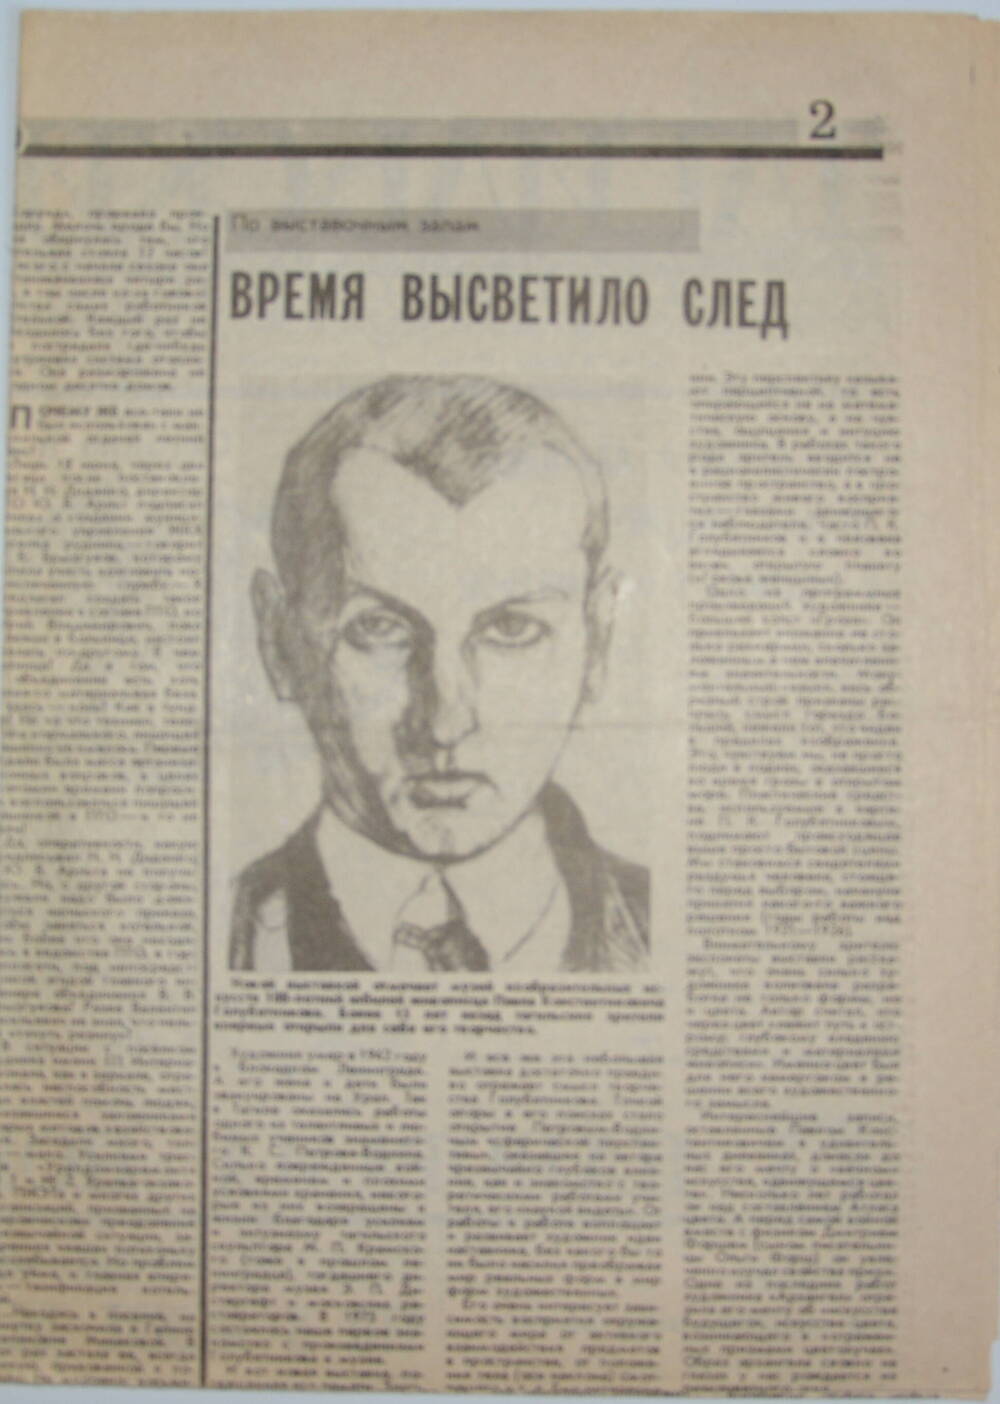 Статья «Время высветило след» о творчестве П.К. Голубятникова в газете «Тагильский рабочий» от 26 декабря 1992 года